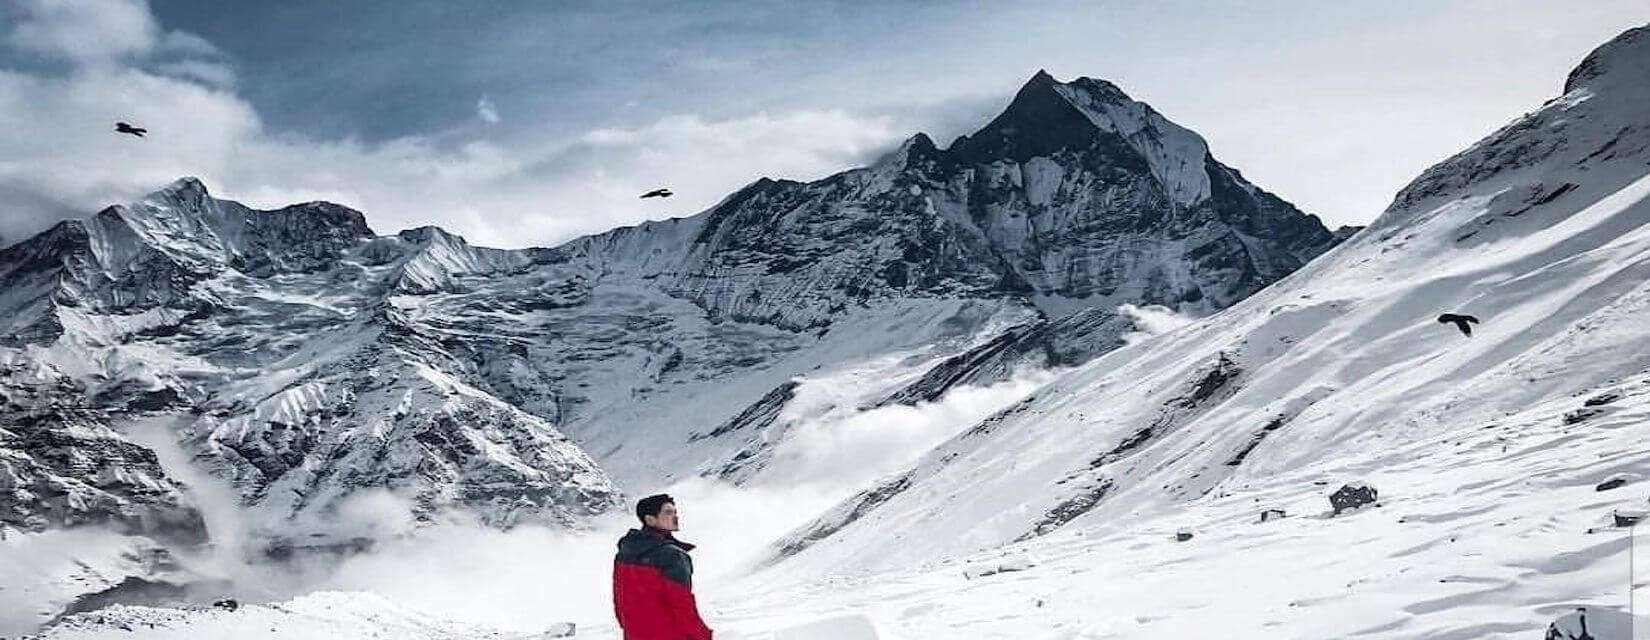 Mount Annapurna Viewpoint